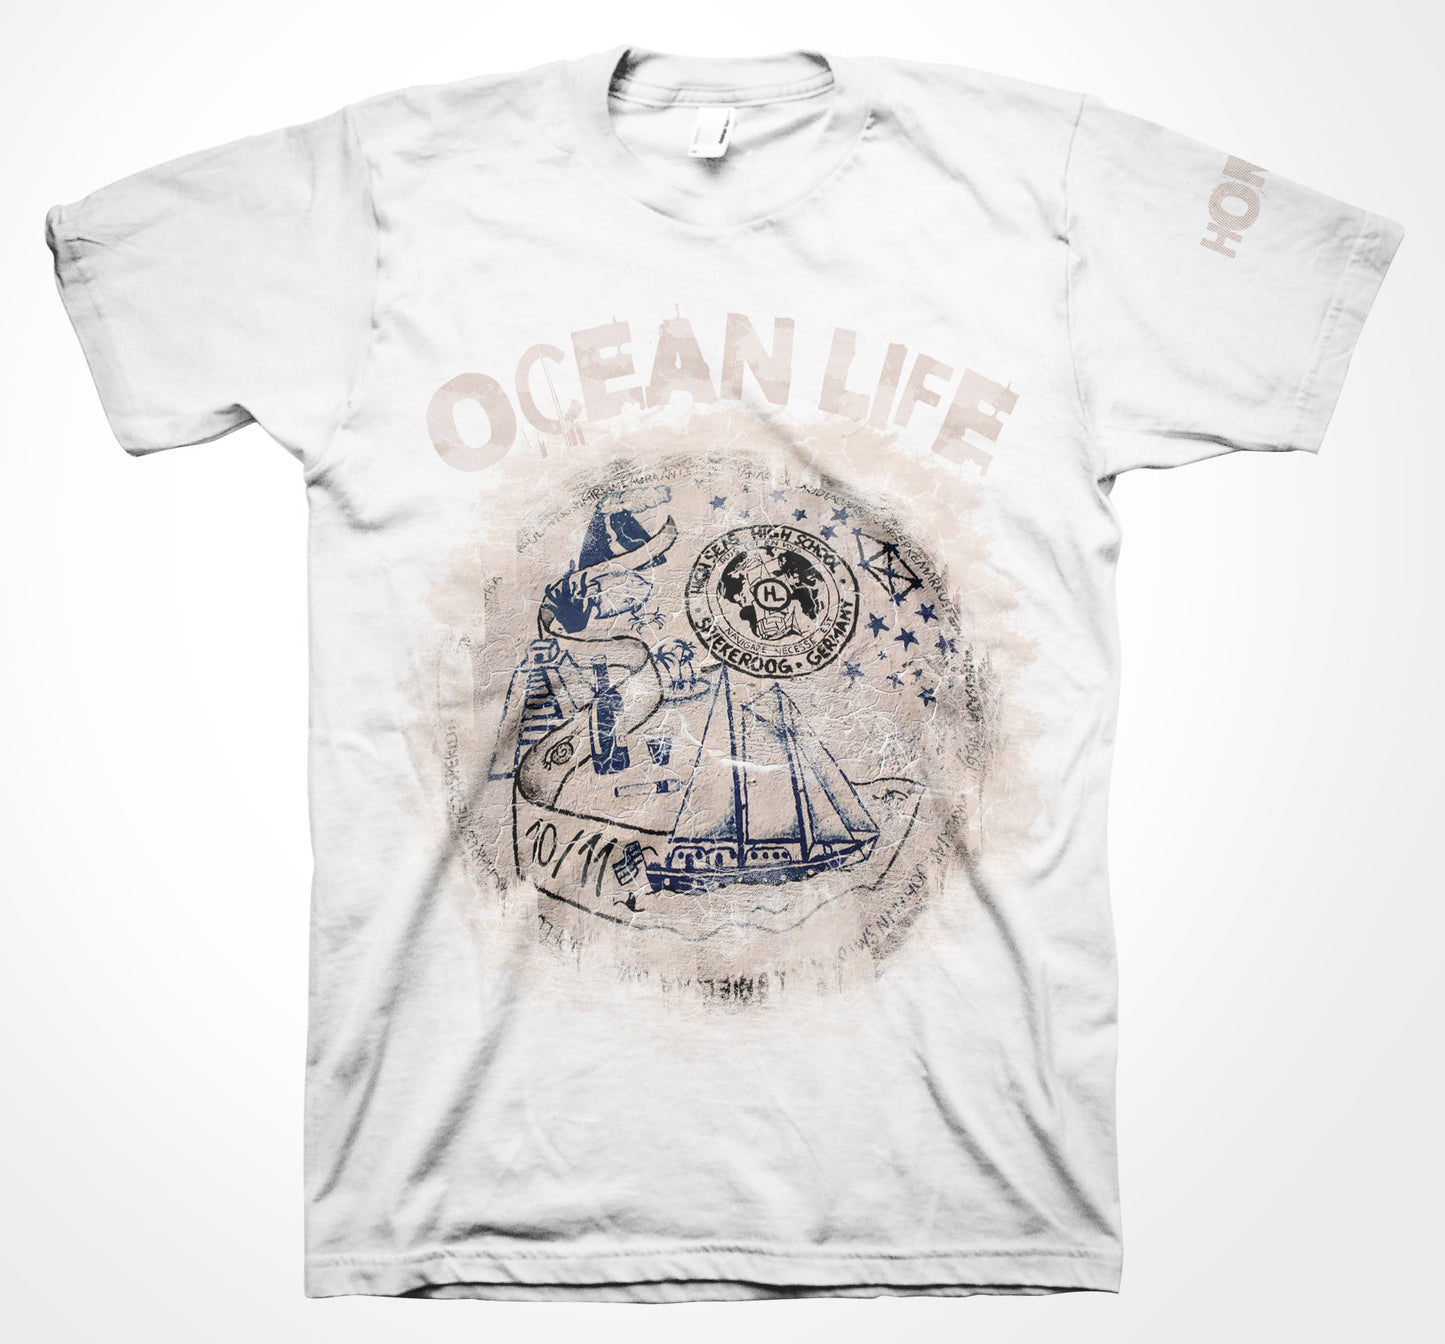 AQUA HMP - T-Shirt 08 - Ocean Life-T-Shirts-AQUATICUS